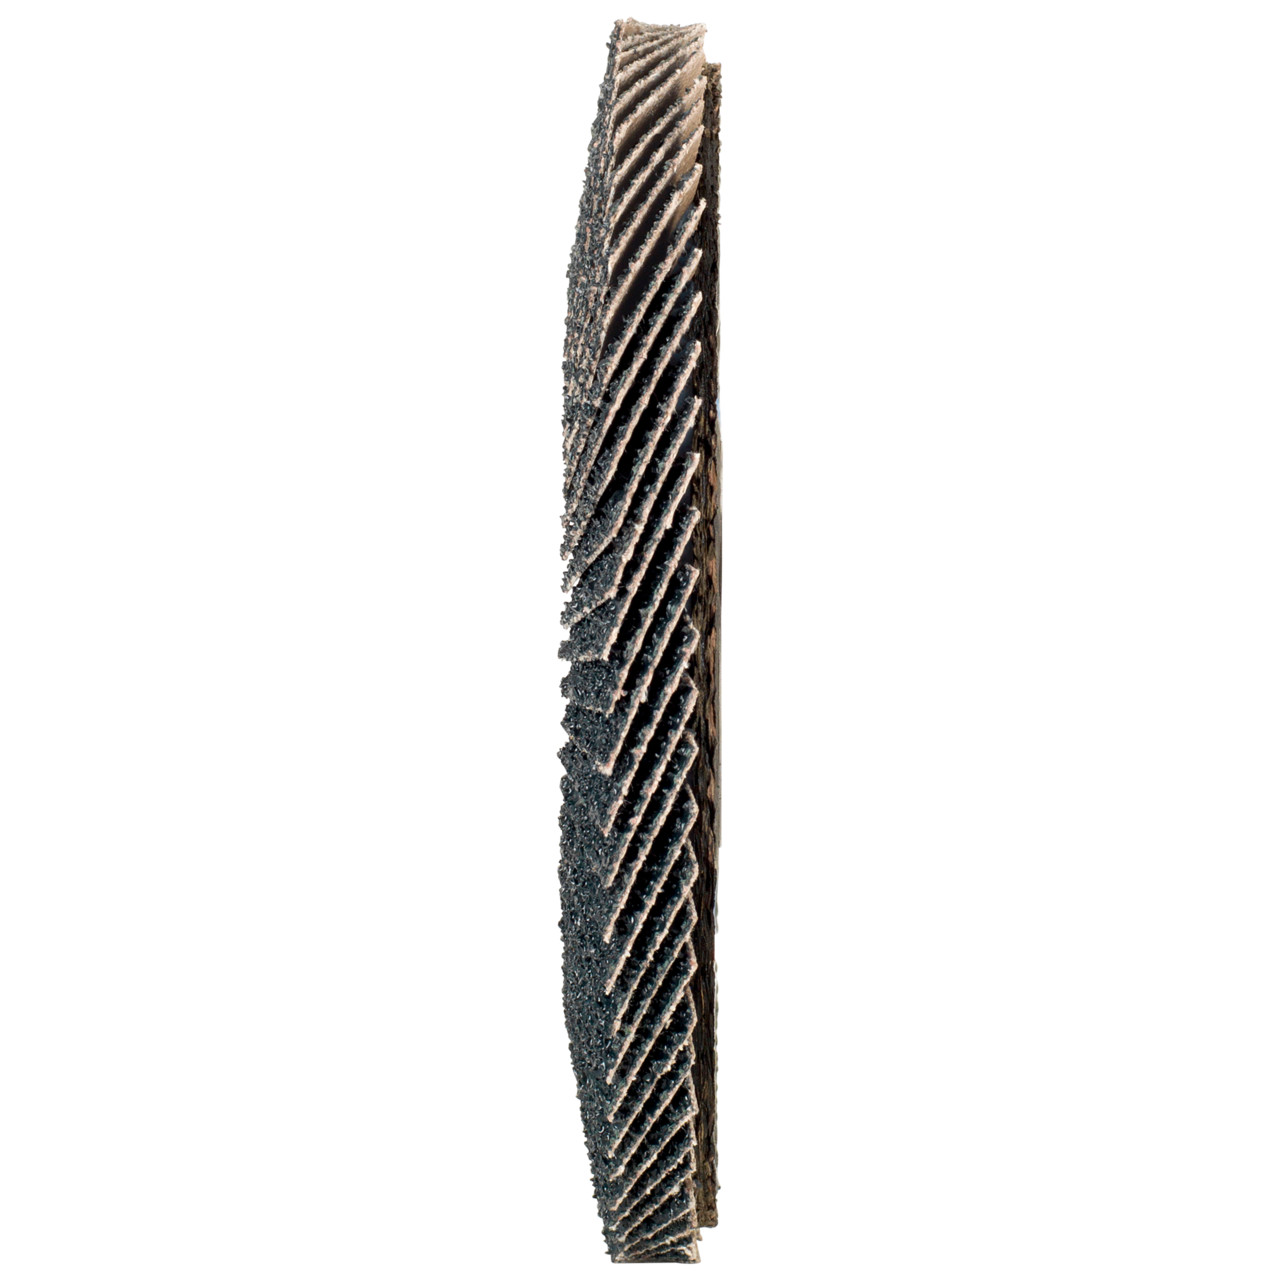 Rondella dentata Tyrolit DxH 115x22.2 2in1 per acciaio e acciaio inox, P40, forma: 27A - versione a gomito (versione con corpo portante in fibra di vetro), Art. 668642